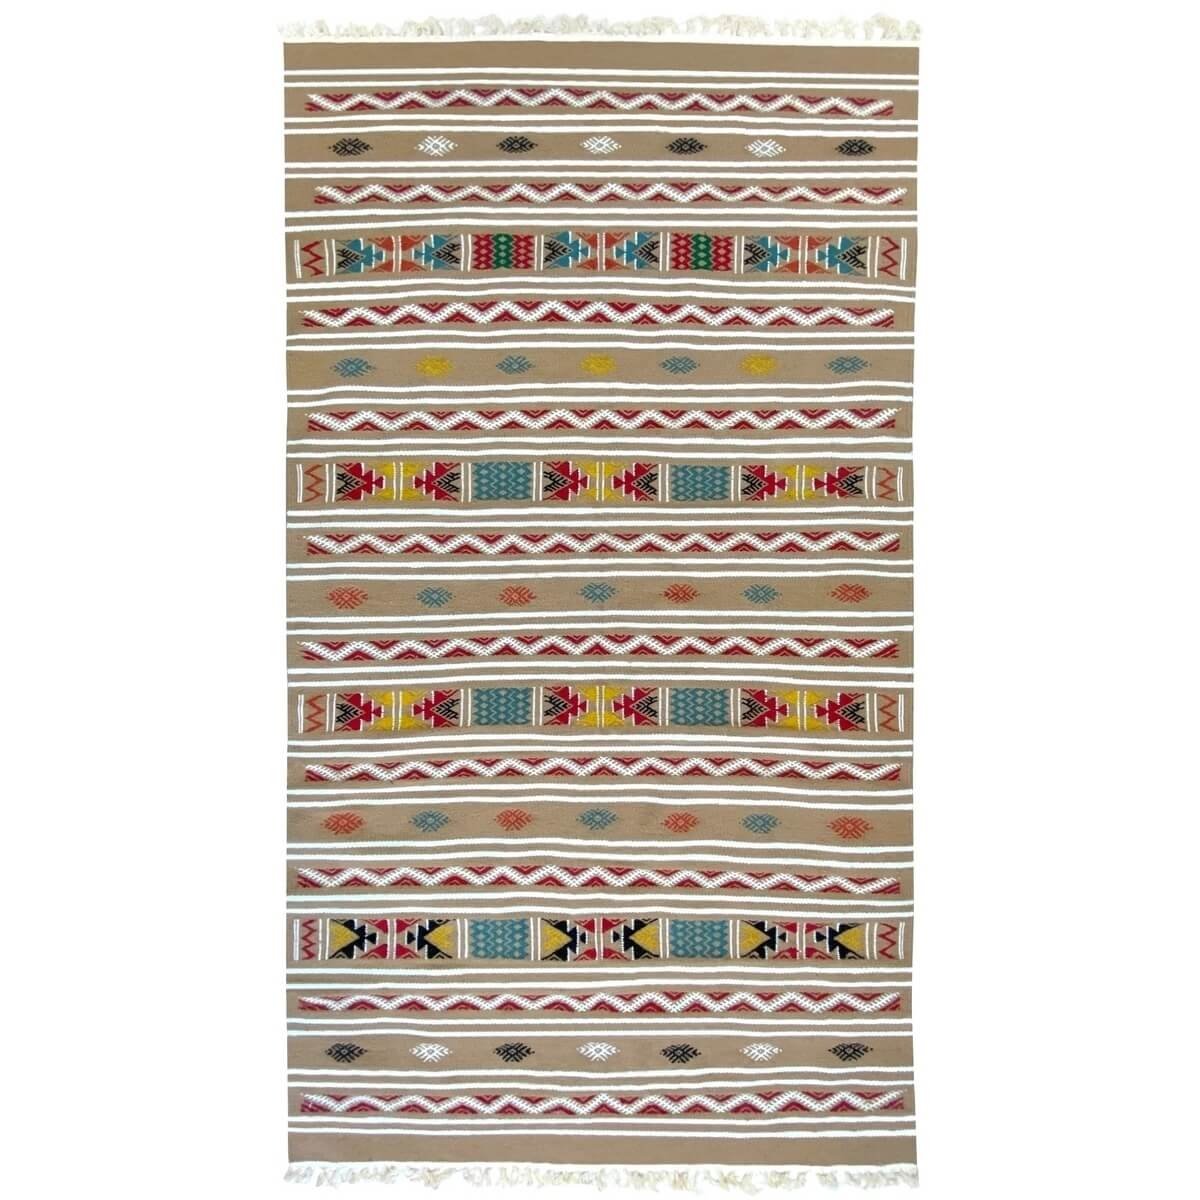 Tapis berbère Tapis Kilim Azel 115x215 Beige/Multicolore (Tissé main, Laine) Tapis kilim tunisien style tapis marocain. Tapis re